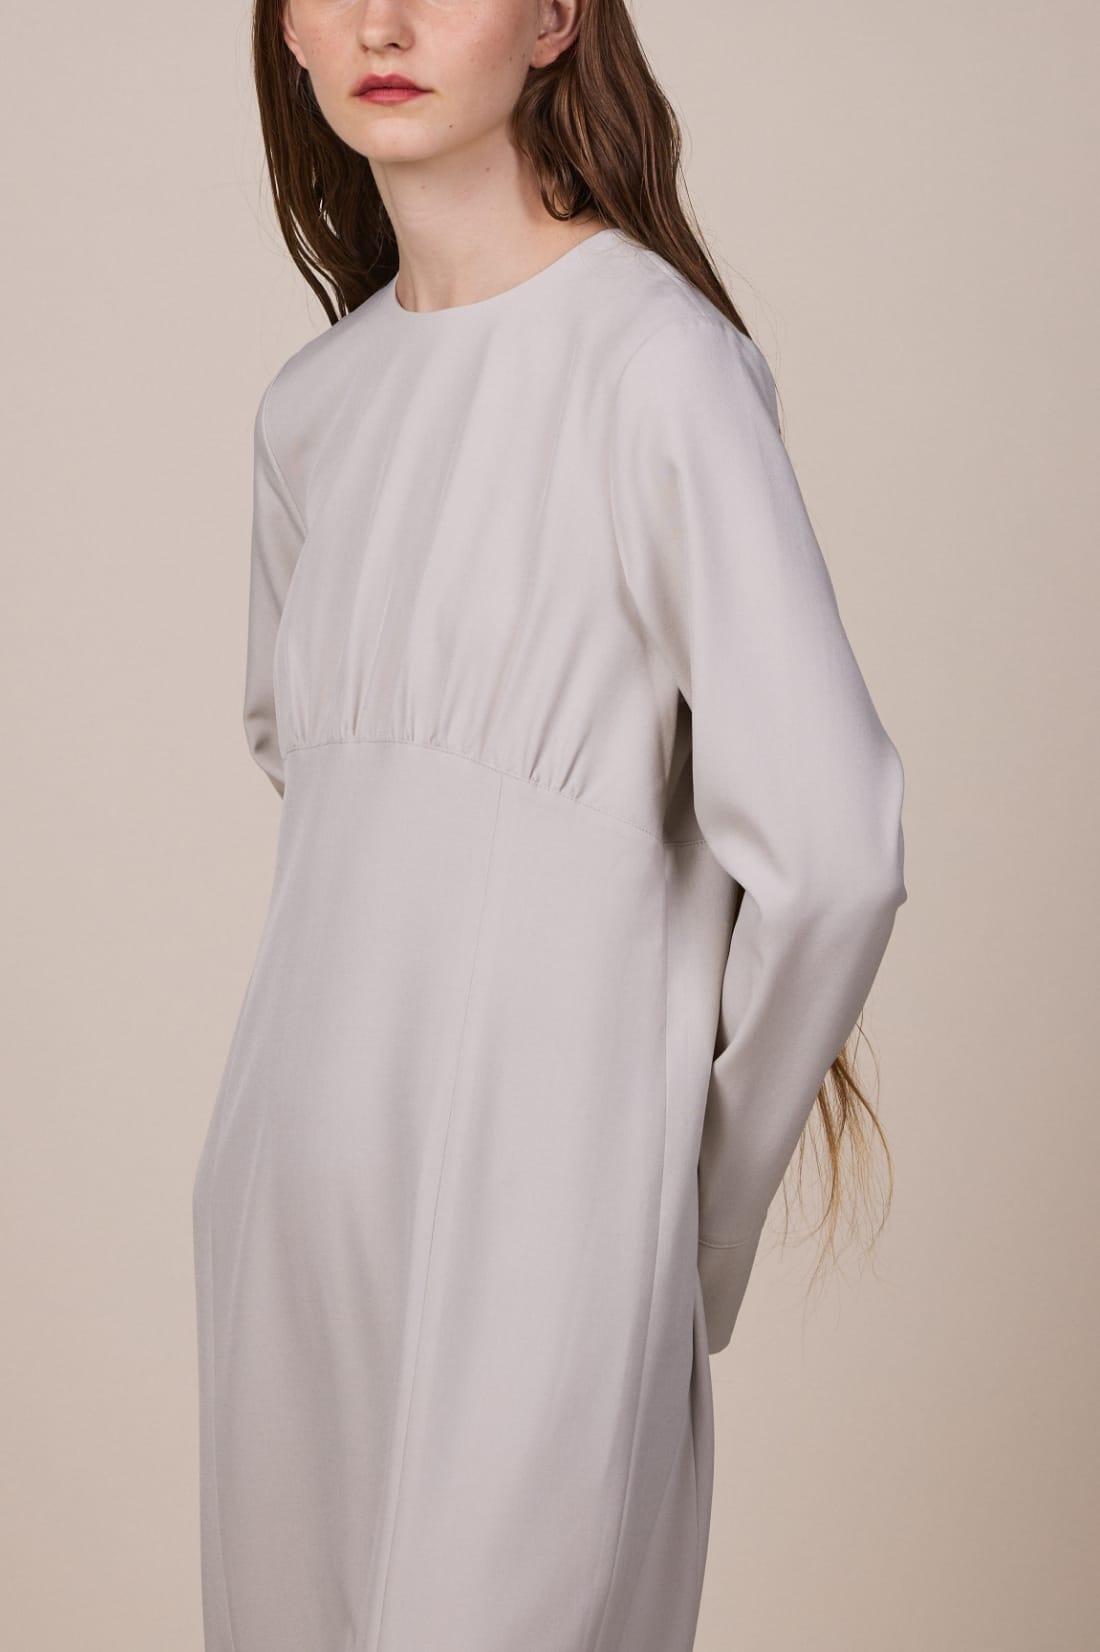 ウエストギャザーセミタイトワンピースを着用している女性モデルの、腰から上の写真 sp